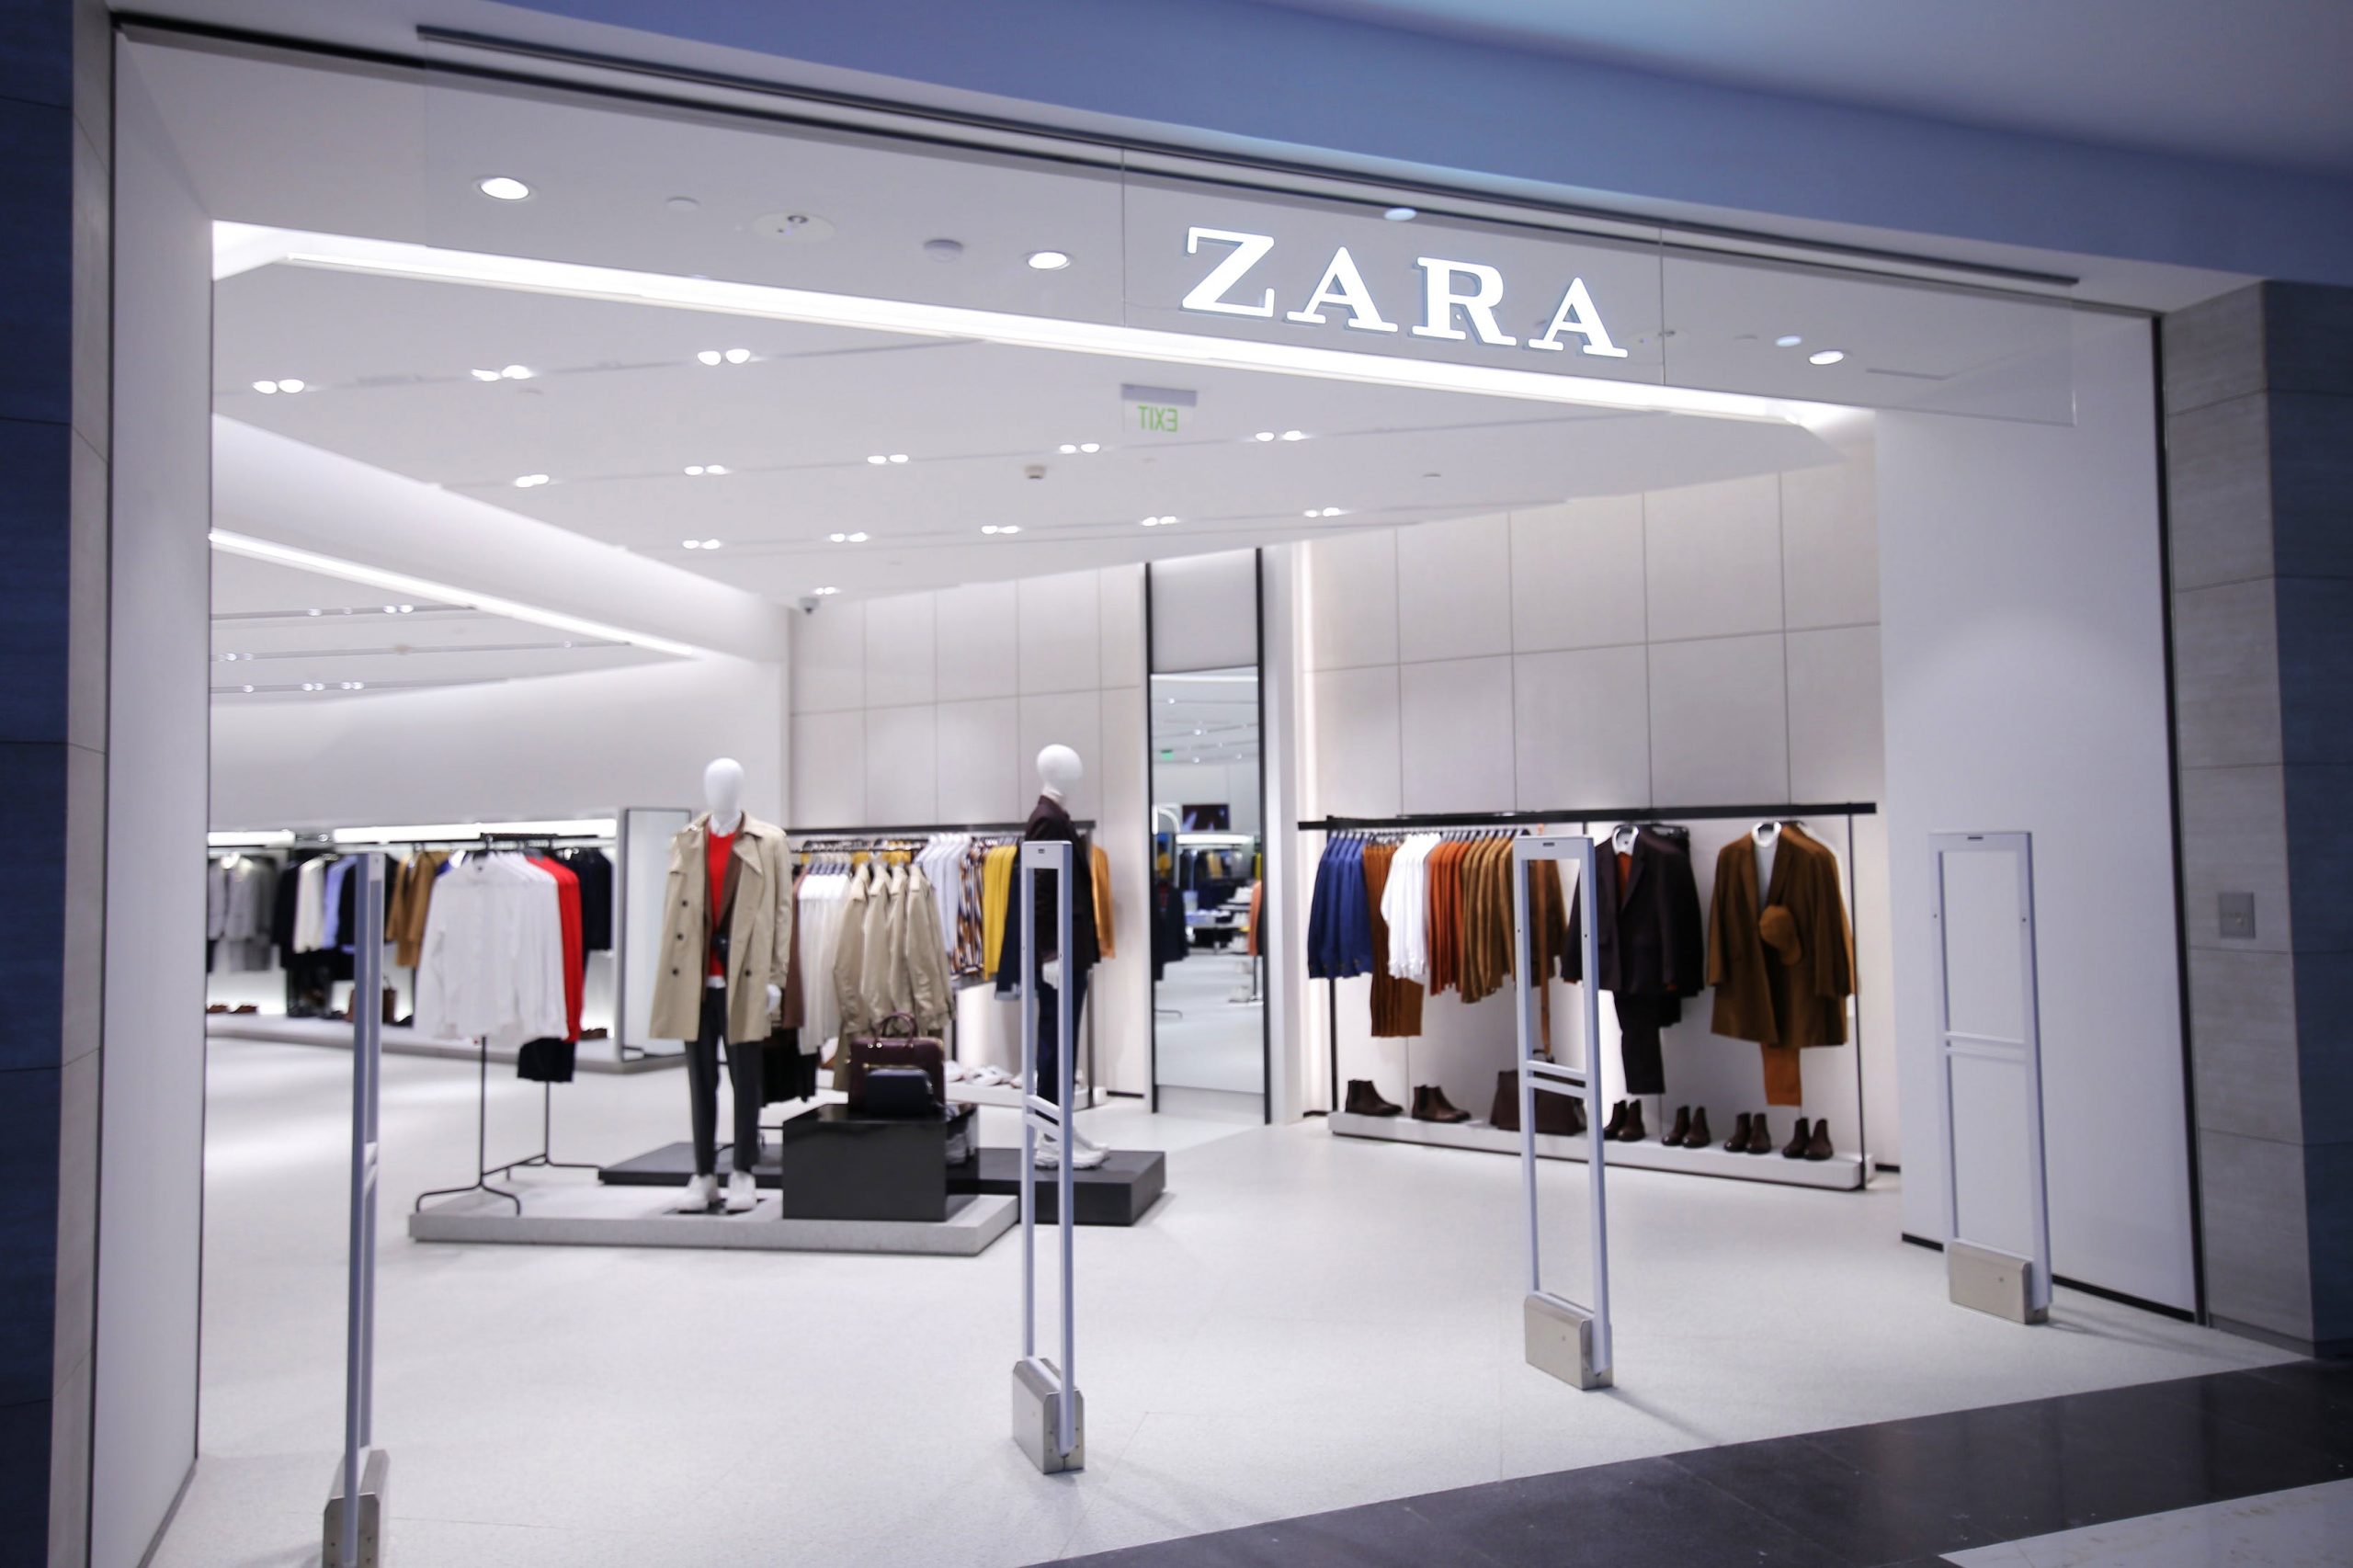 Định hướng của Zara là thời trang nhanh